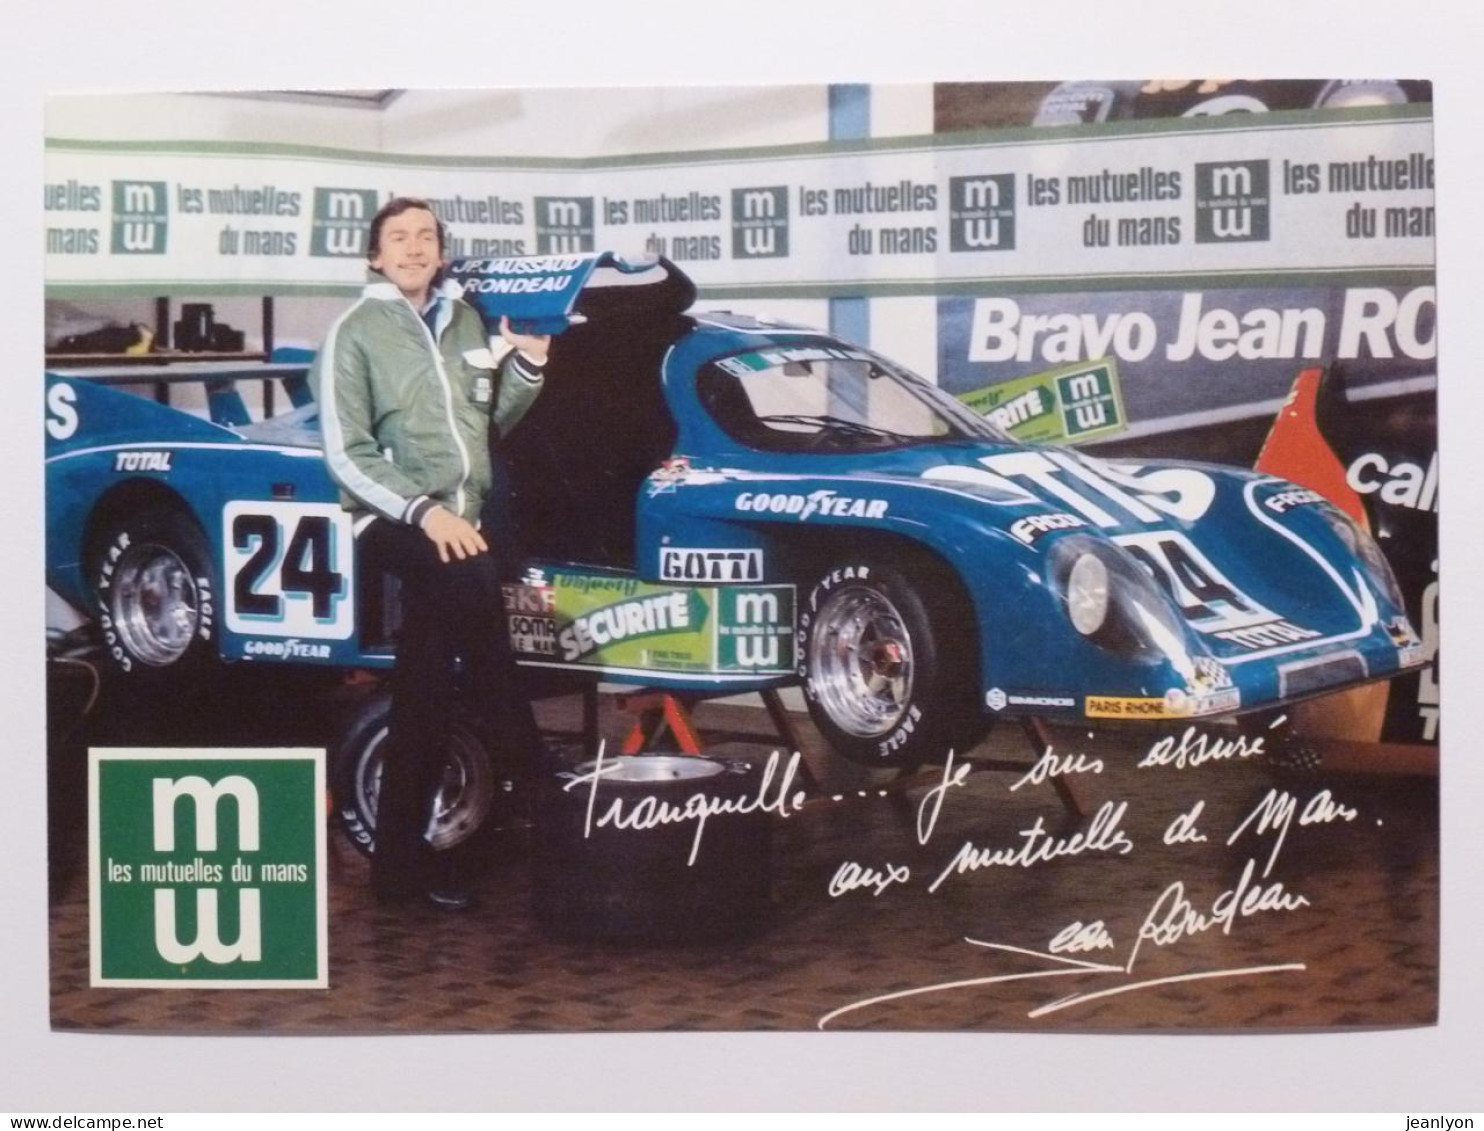 SPORT AUTOMOBILE - 24 HEURES DU MANS 1981 - Voiture Rallye - Jean RONDEAU / Pneu Goodyear - Carte Pub Mutuelles Mans - Le Mans